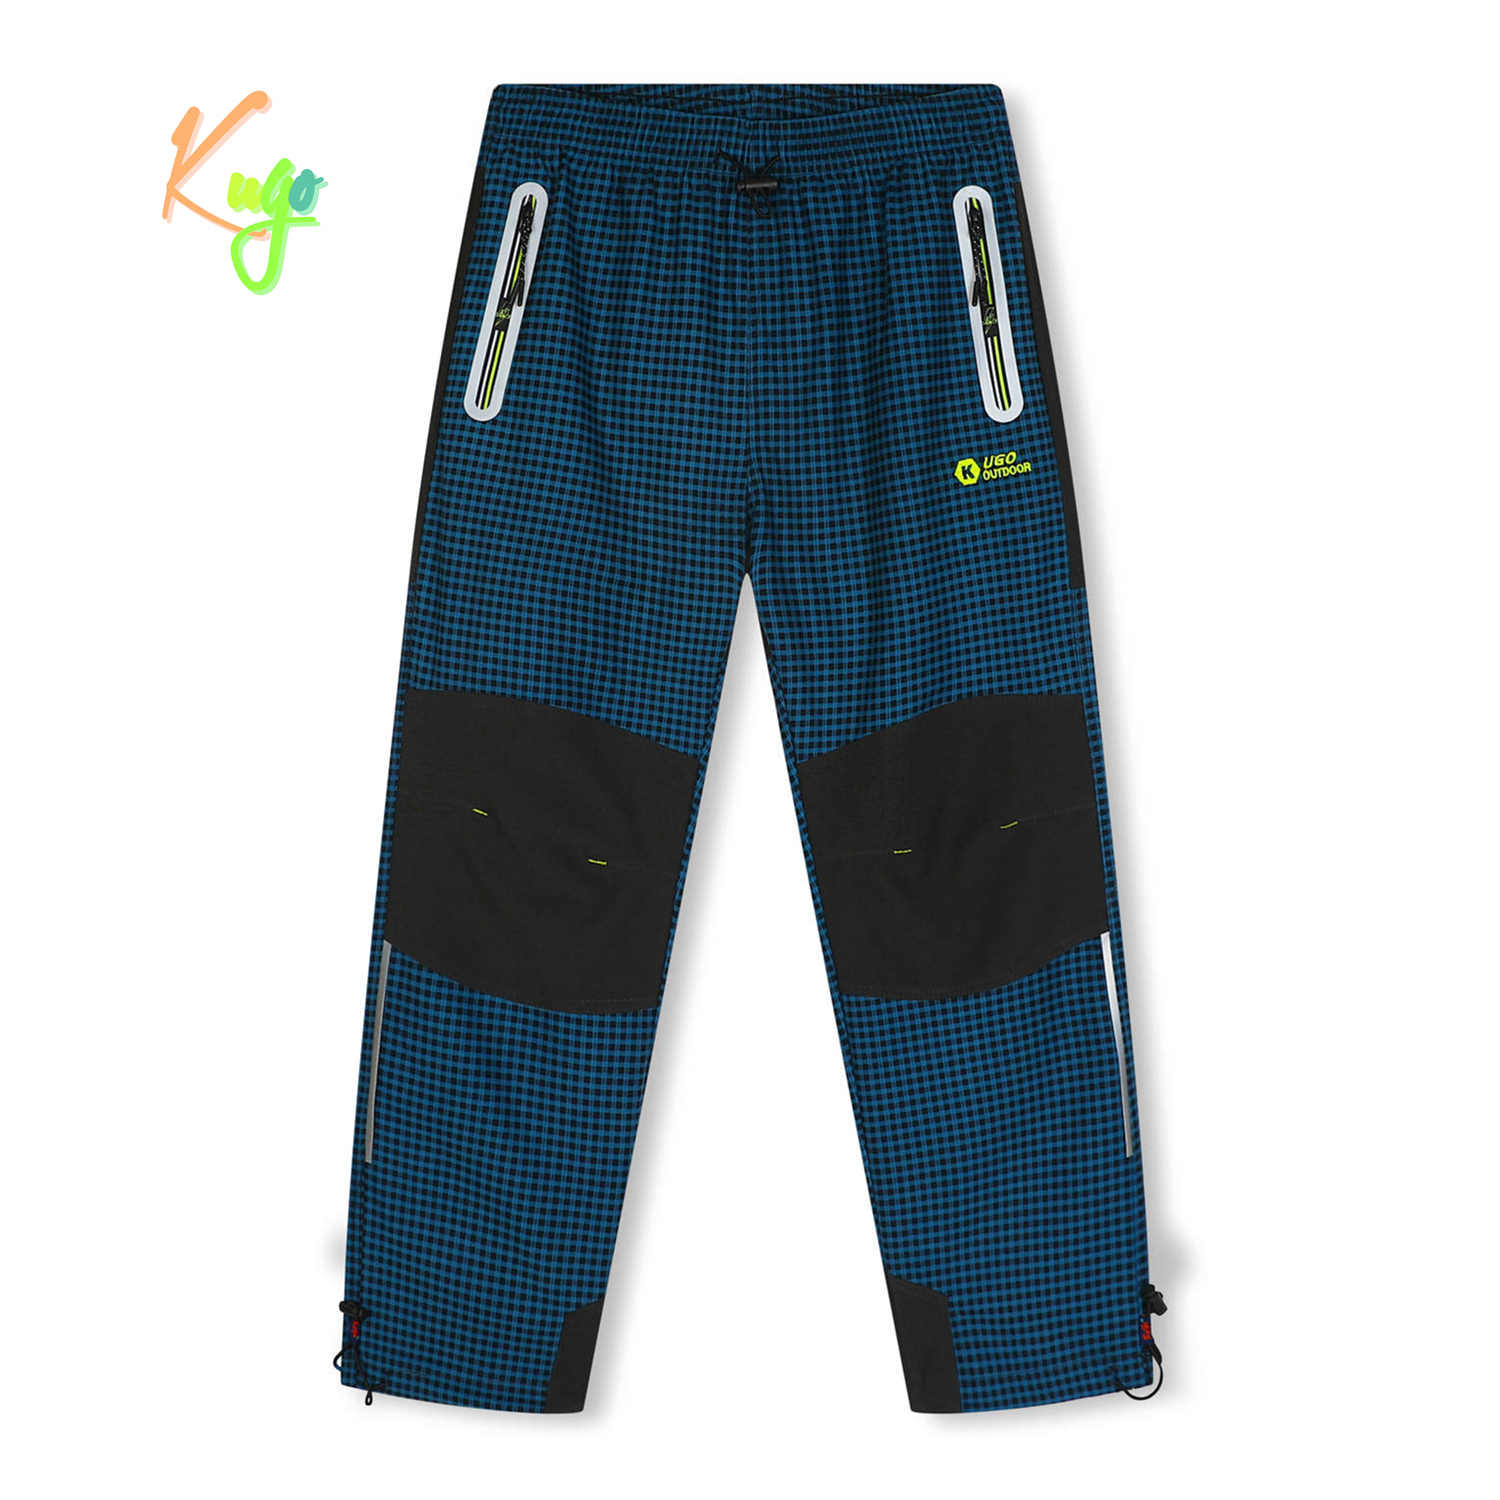 Chlapecké outdoorové kalhoty - KUGO G9658, petrol / signální zipy Barva: Petrol, Velikost: 146